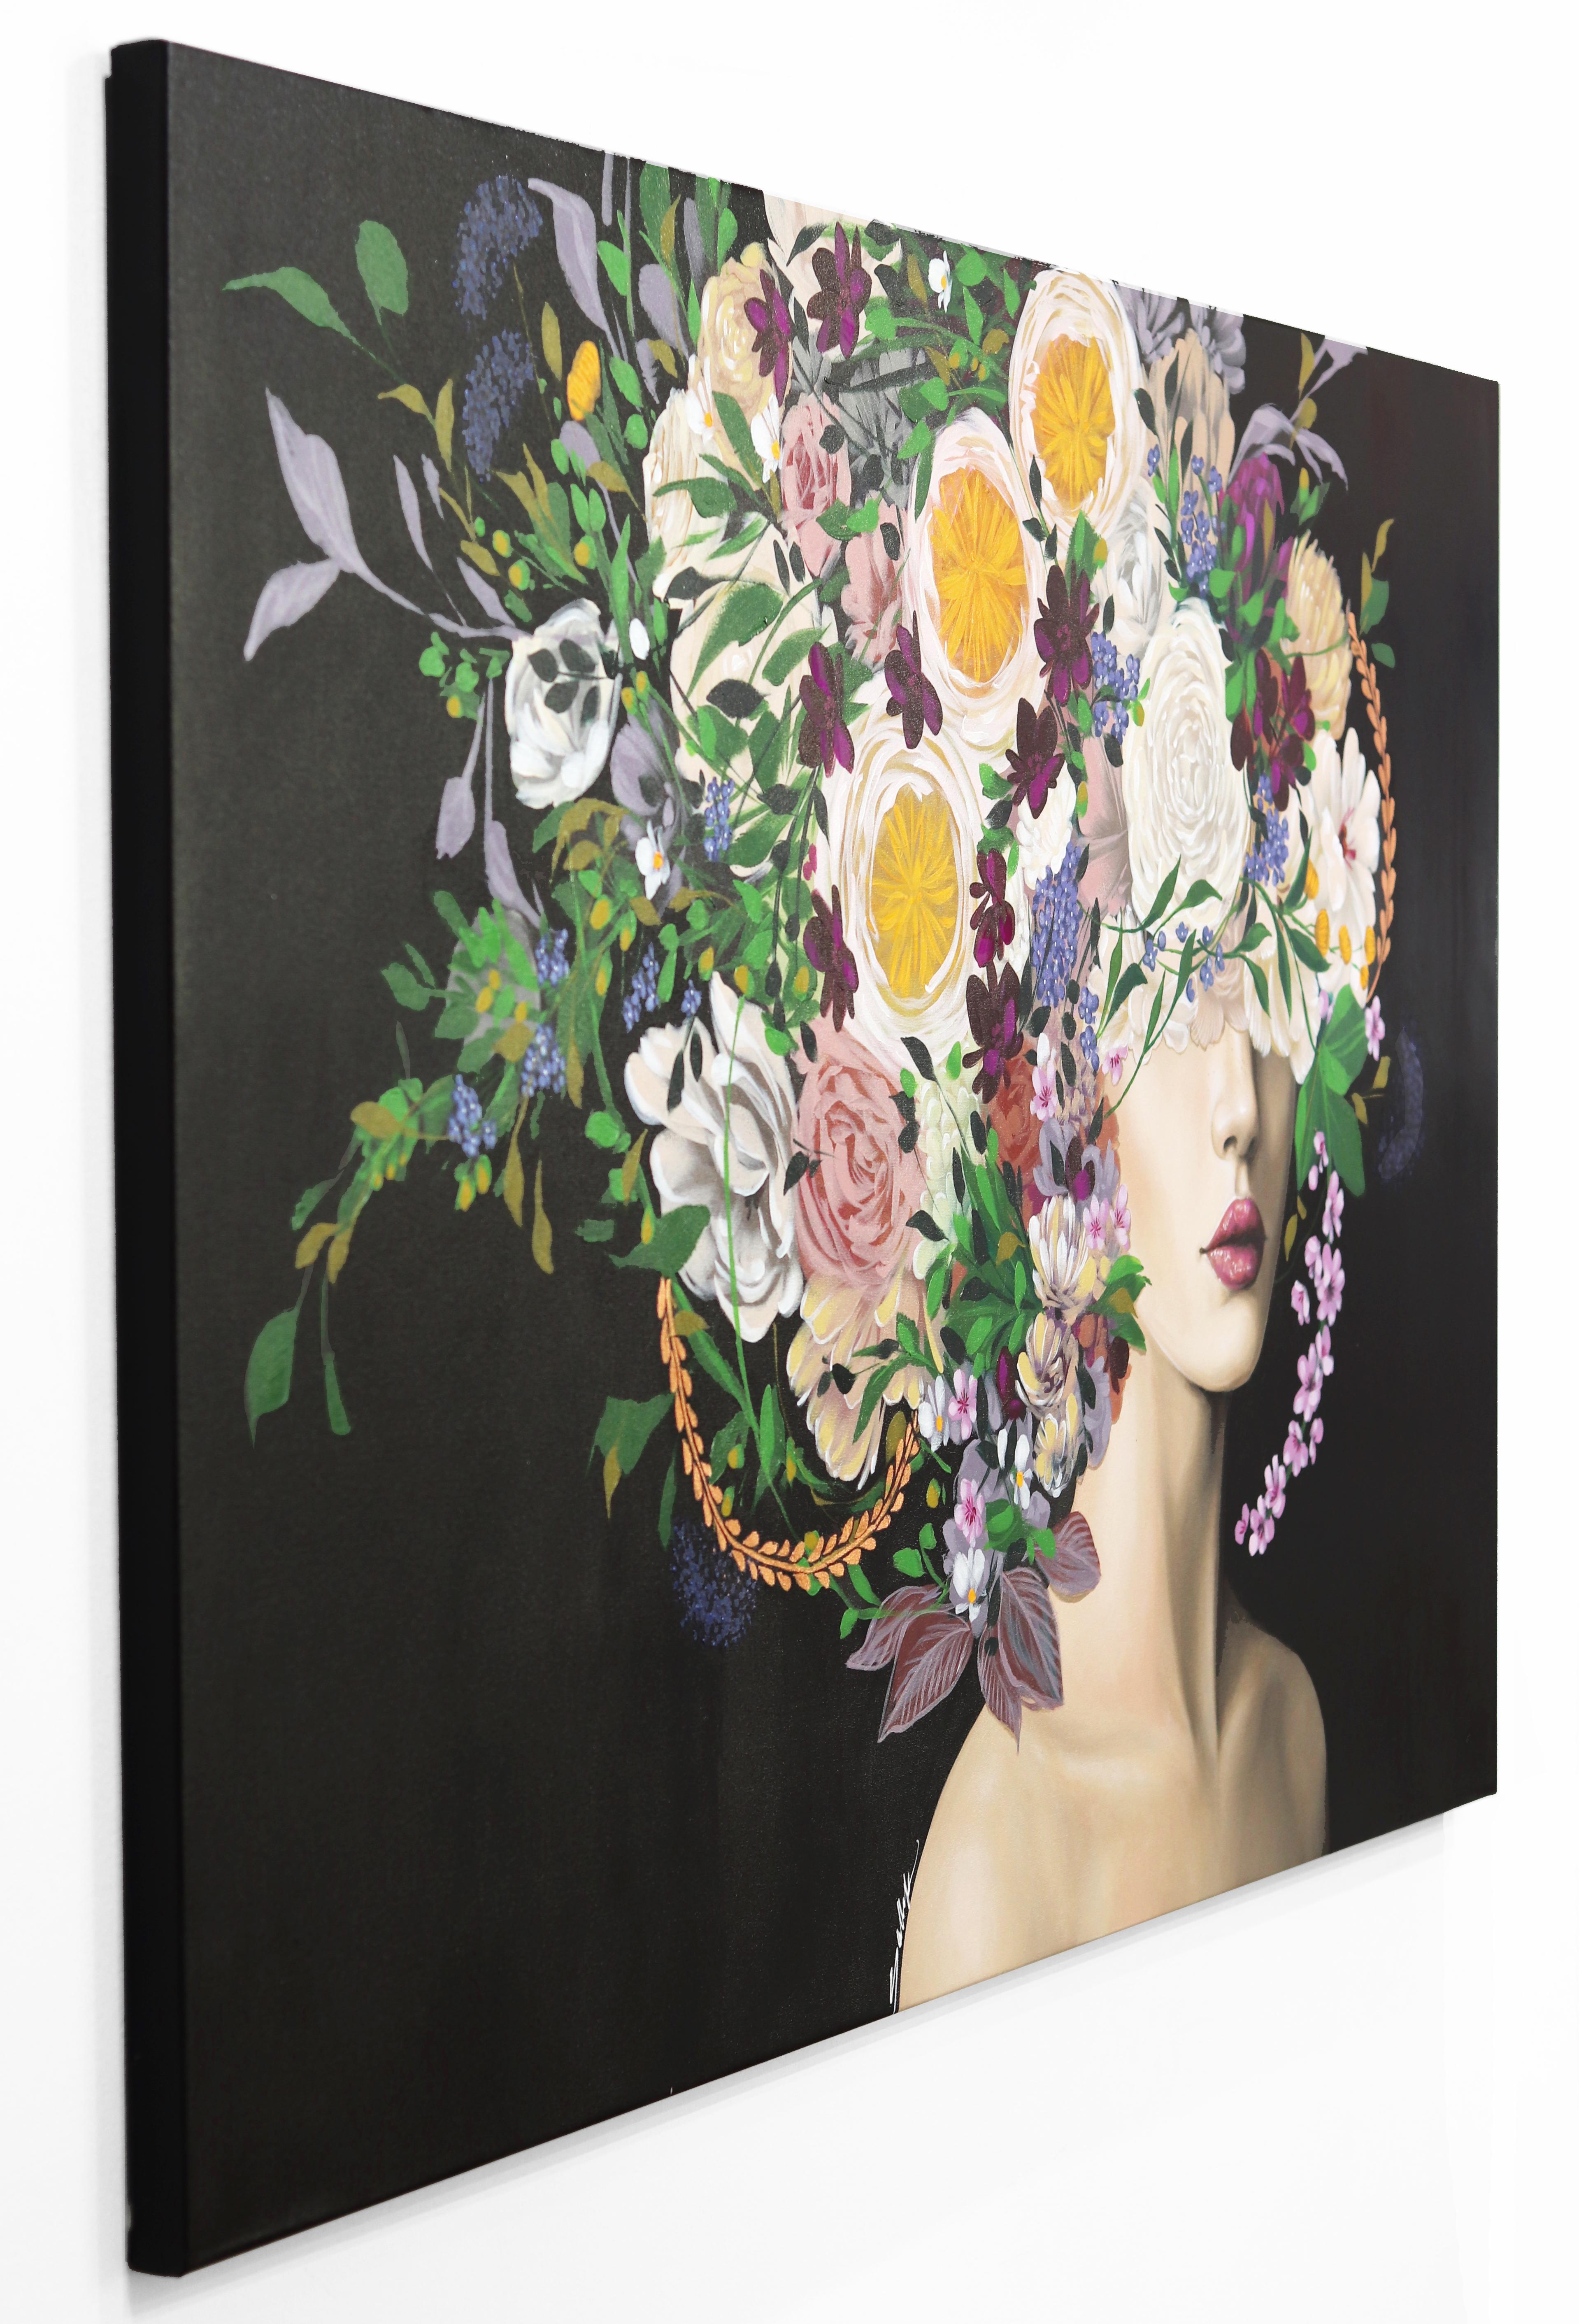 Les portraits floraux captivants de l'artiste libano-américaine Sally K. sont à la fois envoûtants et stimulants. Ses peintures pop-réalistes s'inspirent de femmes fortes et féminines, célébrant l'individualité et la force inhérente à l'expérience